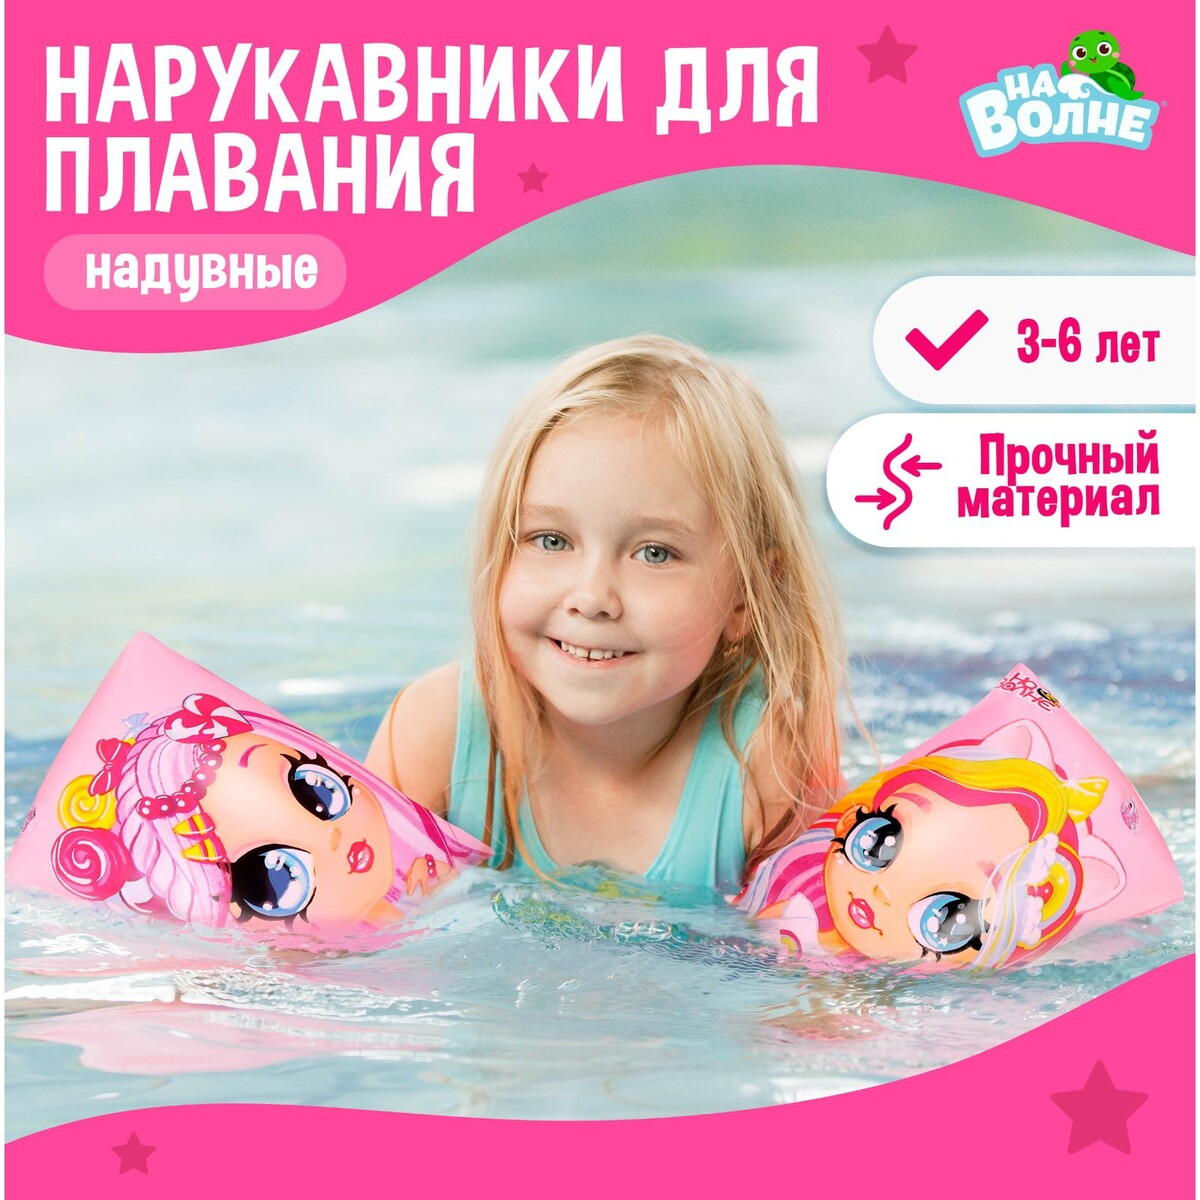 Нарукавники детские для плавания, 20 х 16 см (±1 см), На волне